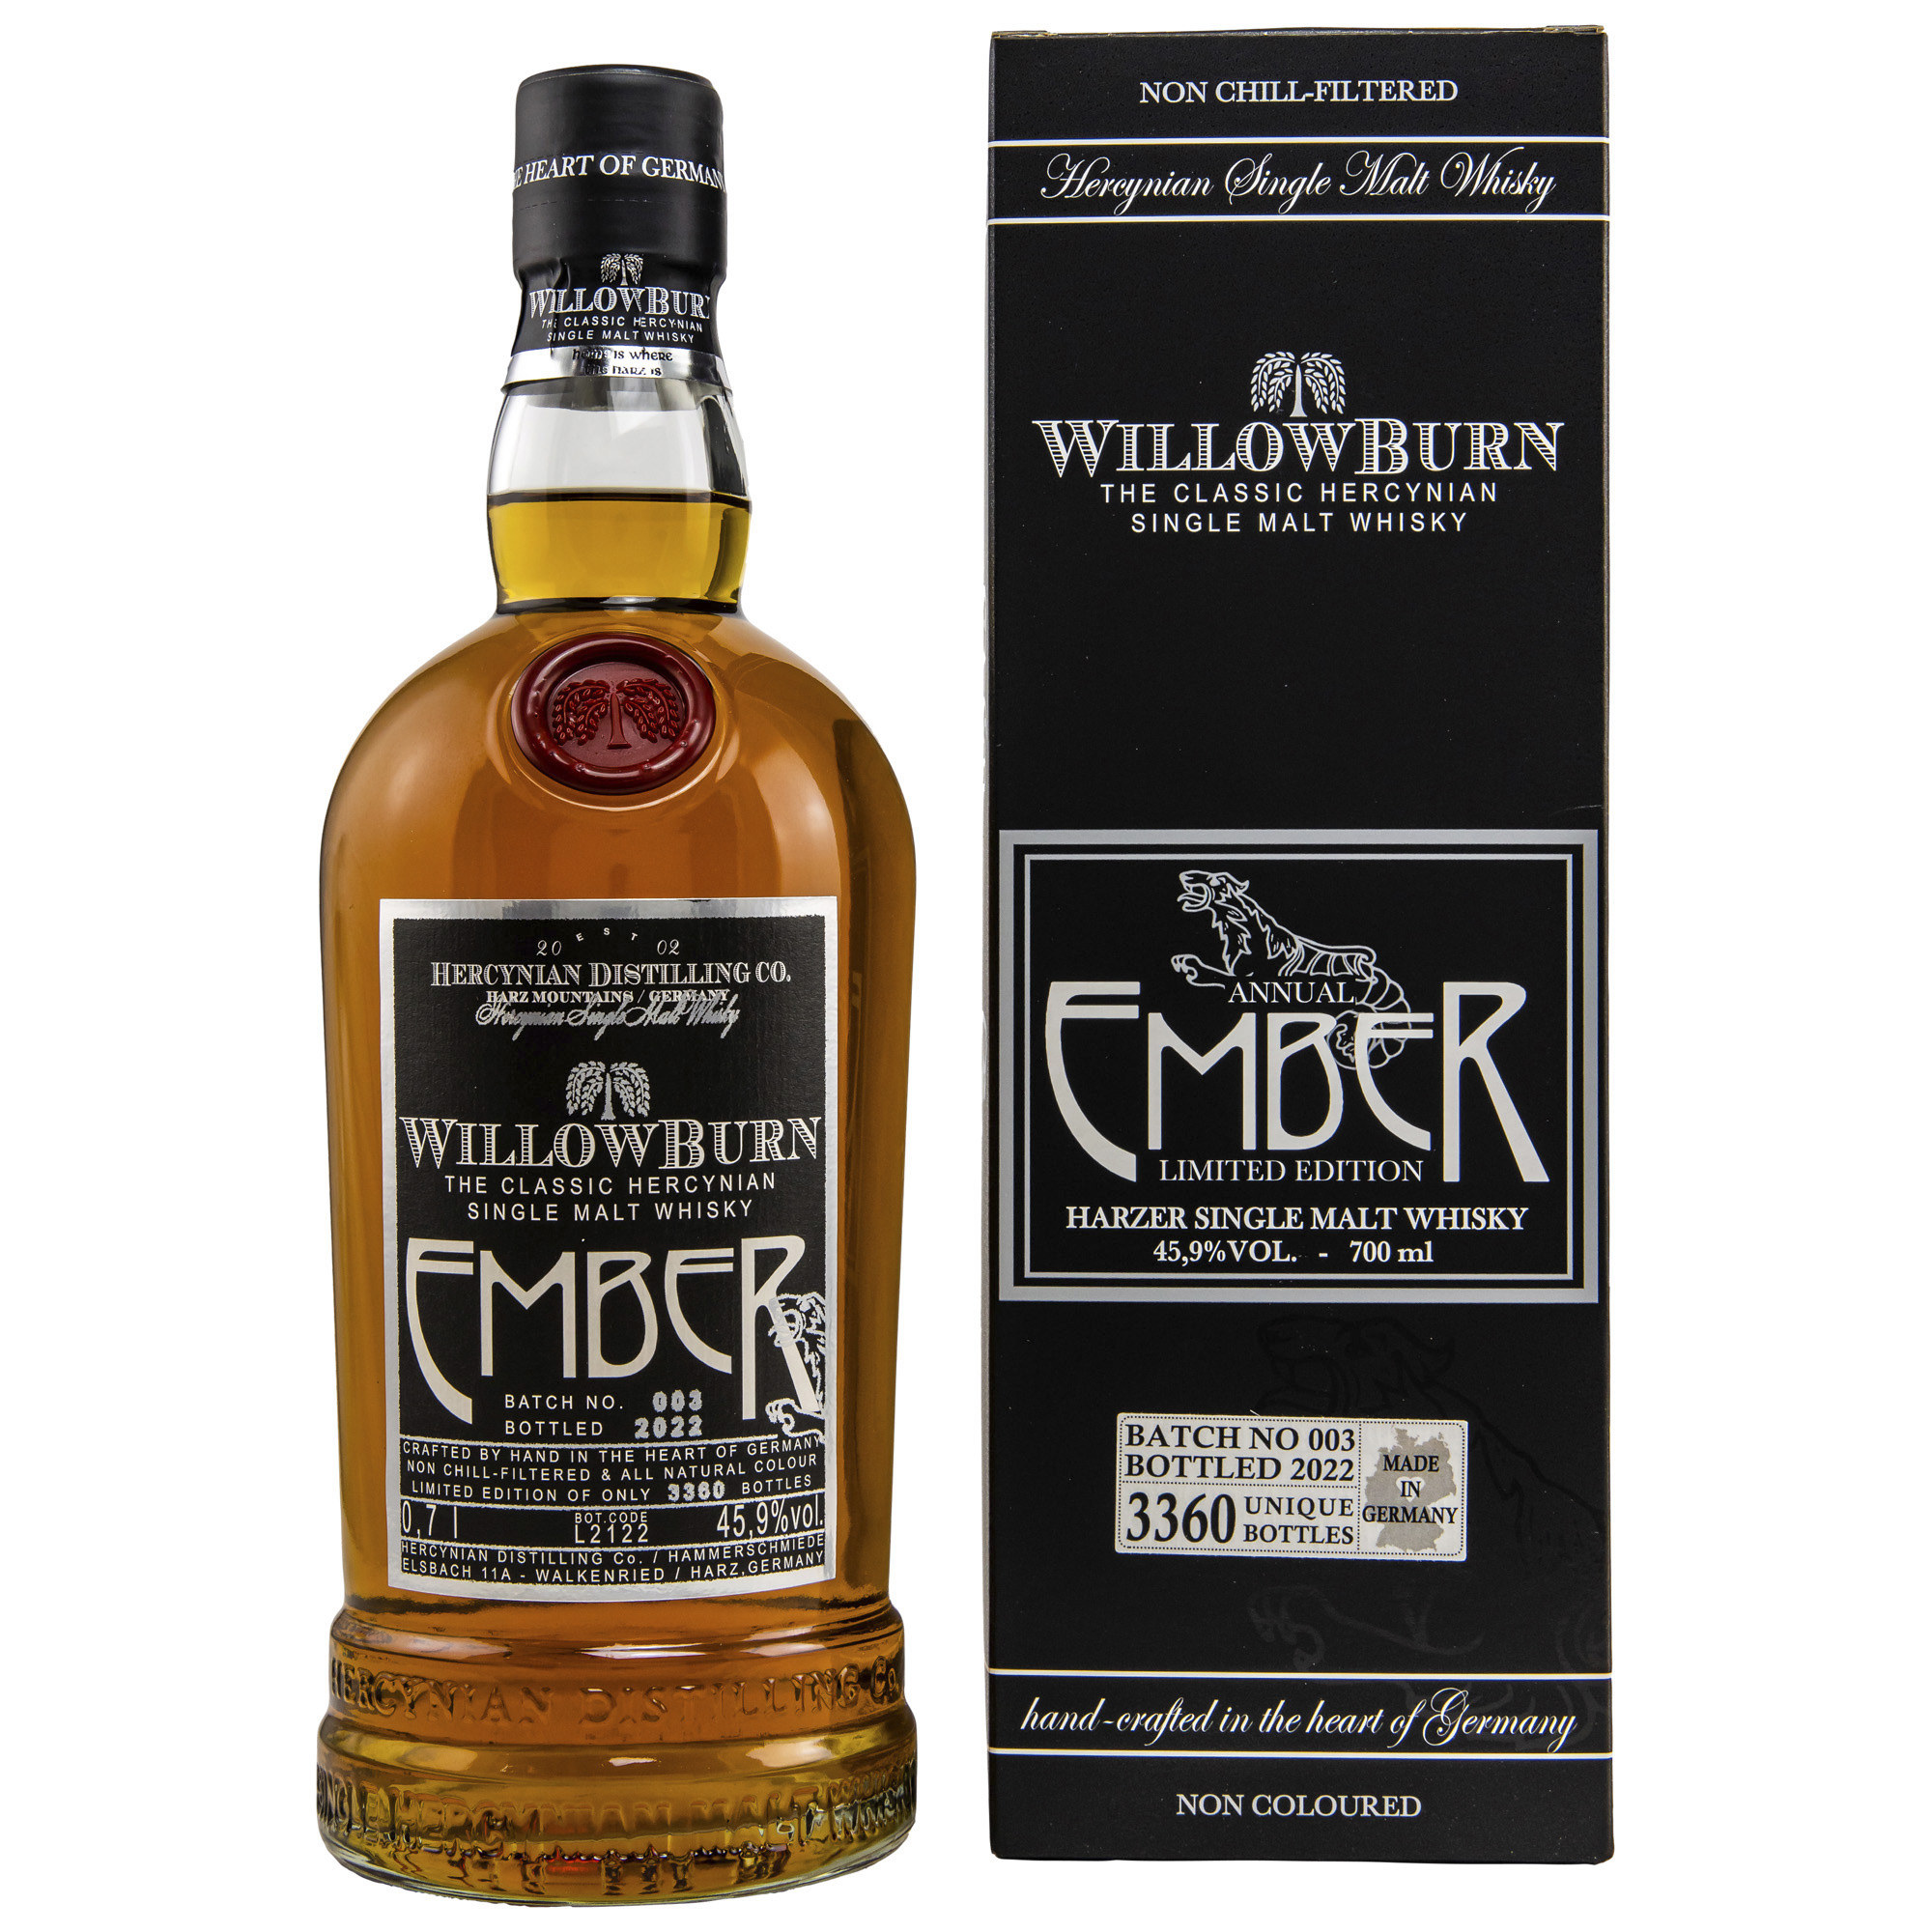 Willowburn Ember Single Malt Whisky 45,9% vol., 0,7l